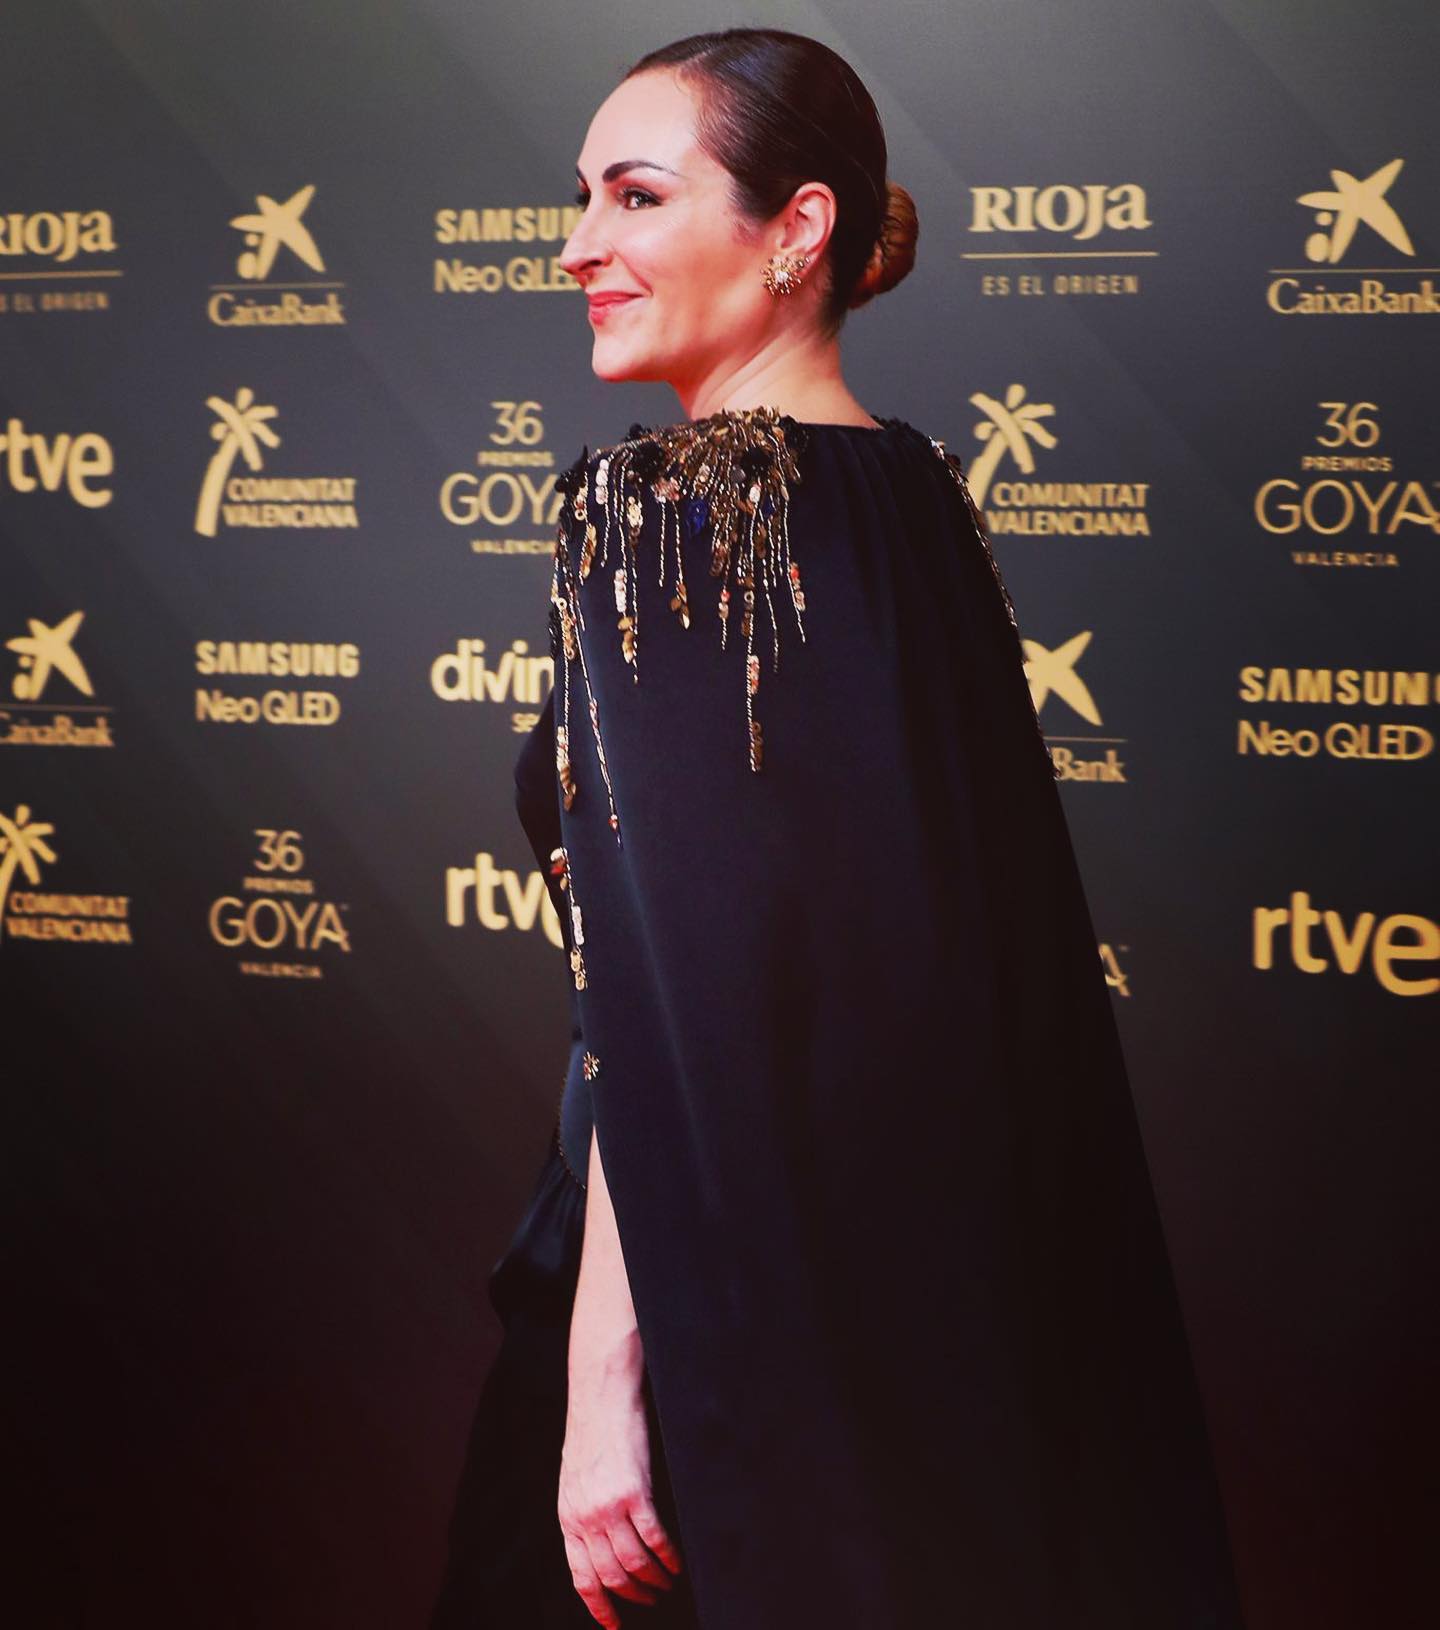 الممثلة الاسبانية Ana MiLán - الصورة من حسابها الرسمي على انستقرام